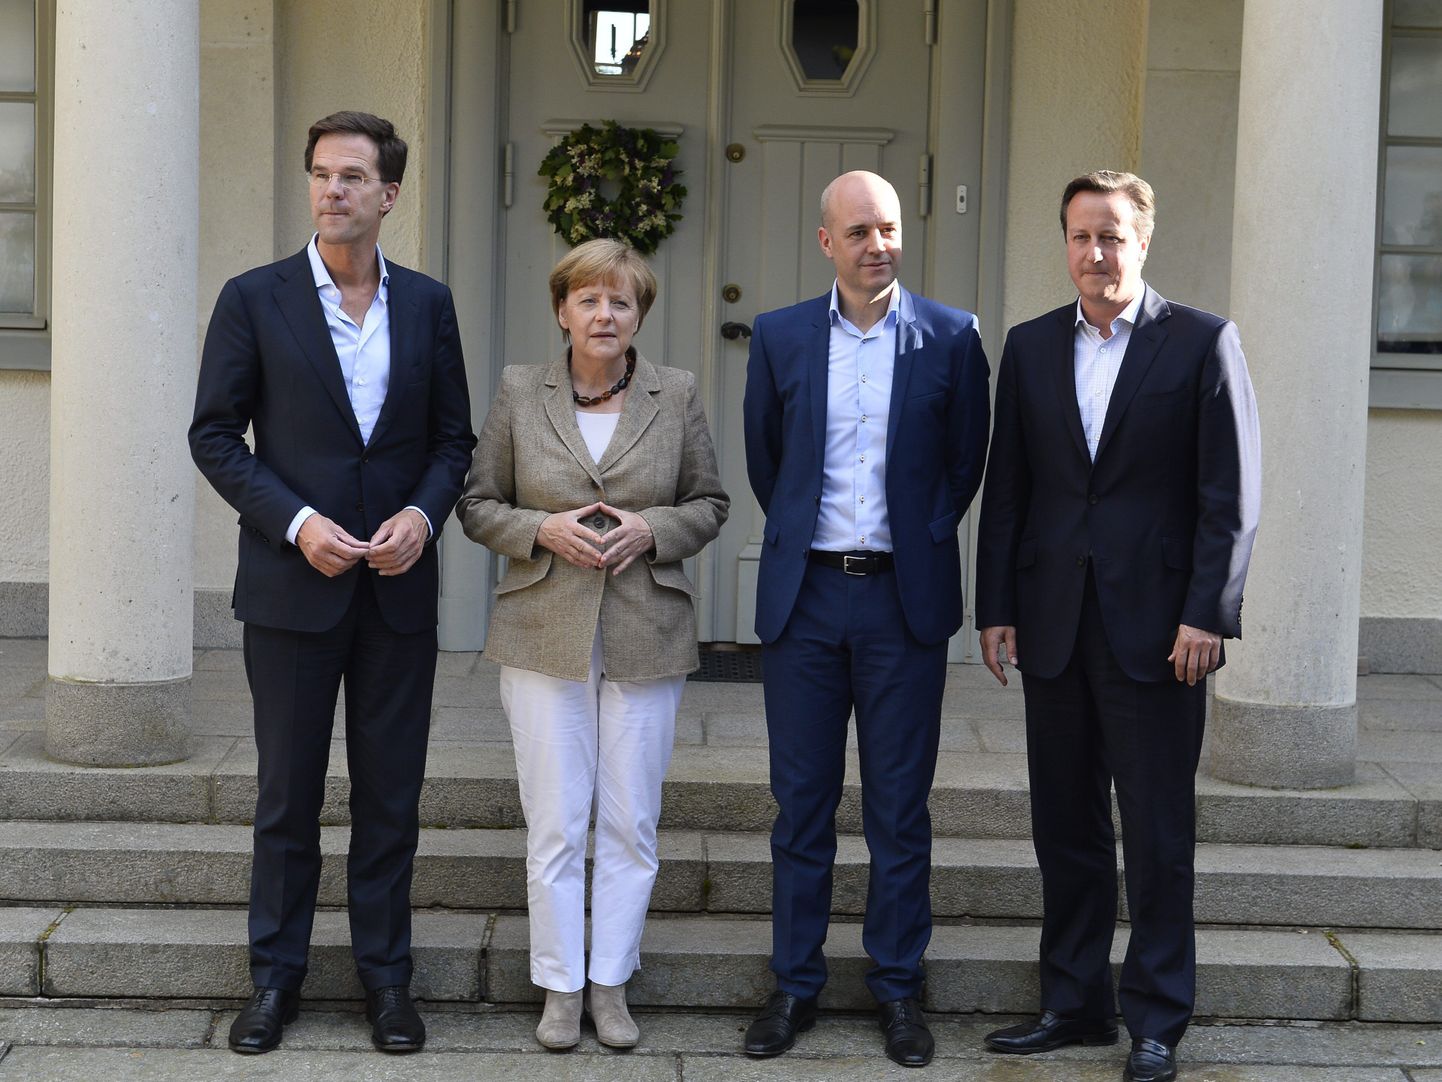 Hollandi peaminister Mark Rutte (vasakul), Saksa kantsler Angela Merkel, Rootsi valitsusjuht Fredrik Reinfeld ja Briti peaminister David Cameron (paremal) Rootsi valitsuse residentsi ees Harpsundis.